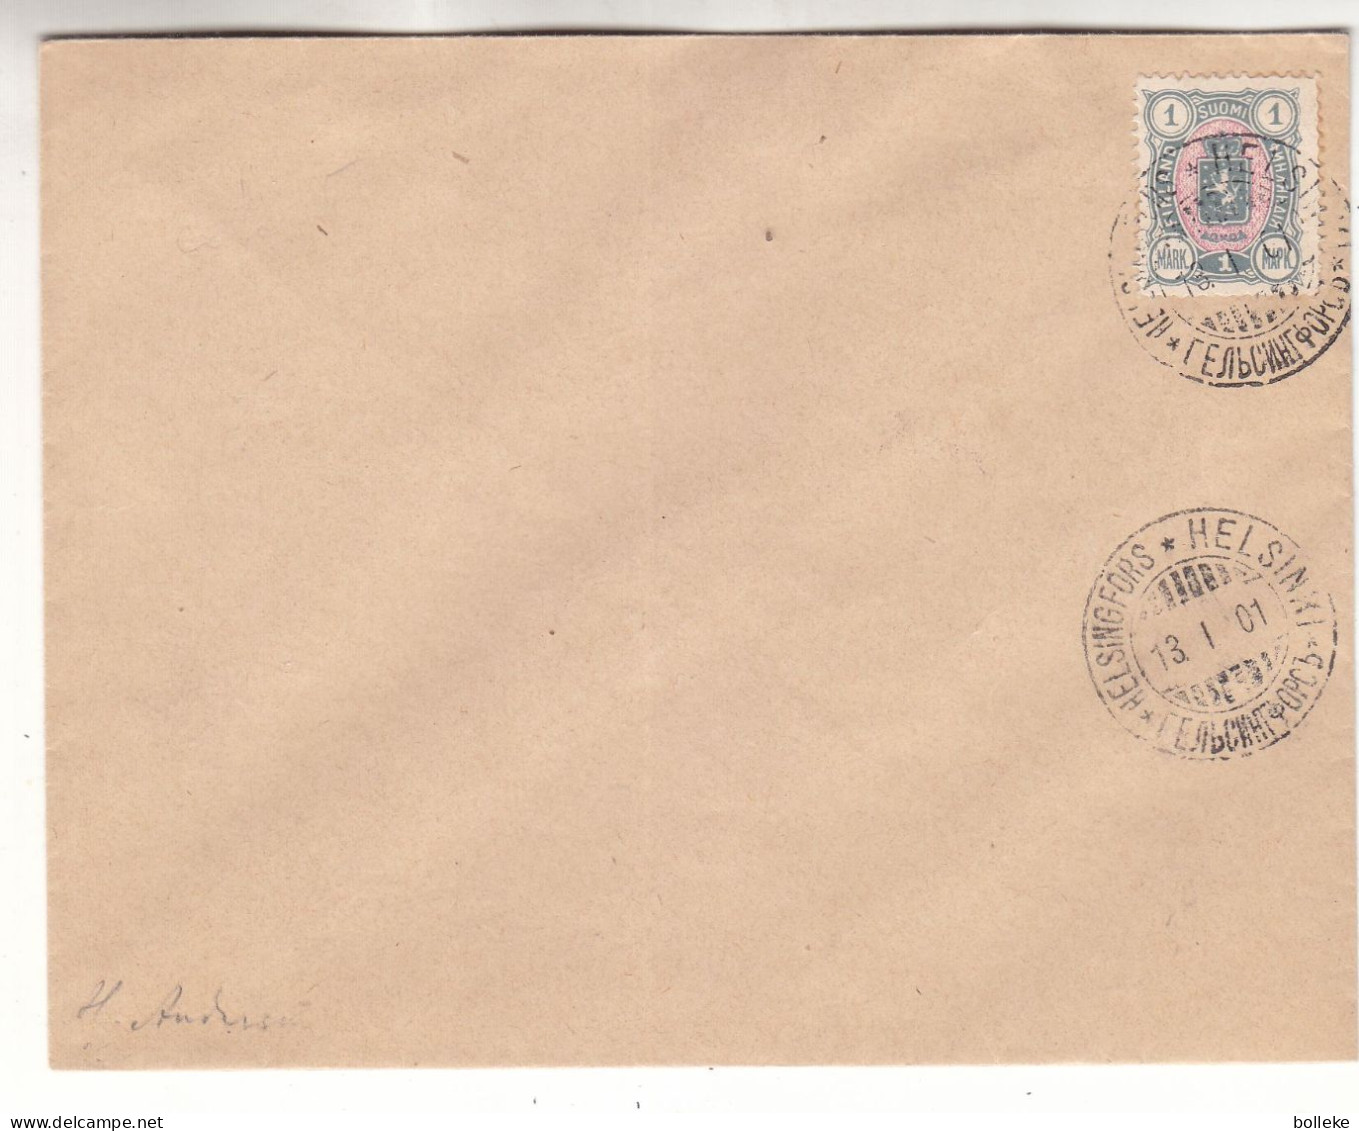 Finlande - Lettre De 1901 - Oblit Helsinki - Signée - Valeur 100 Euros - Covers & Documents